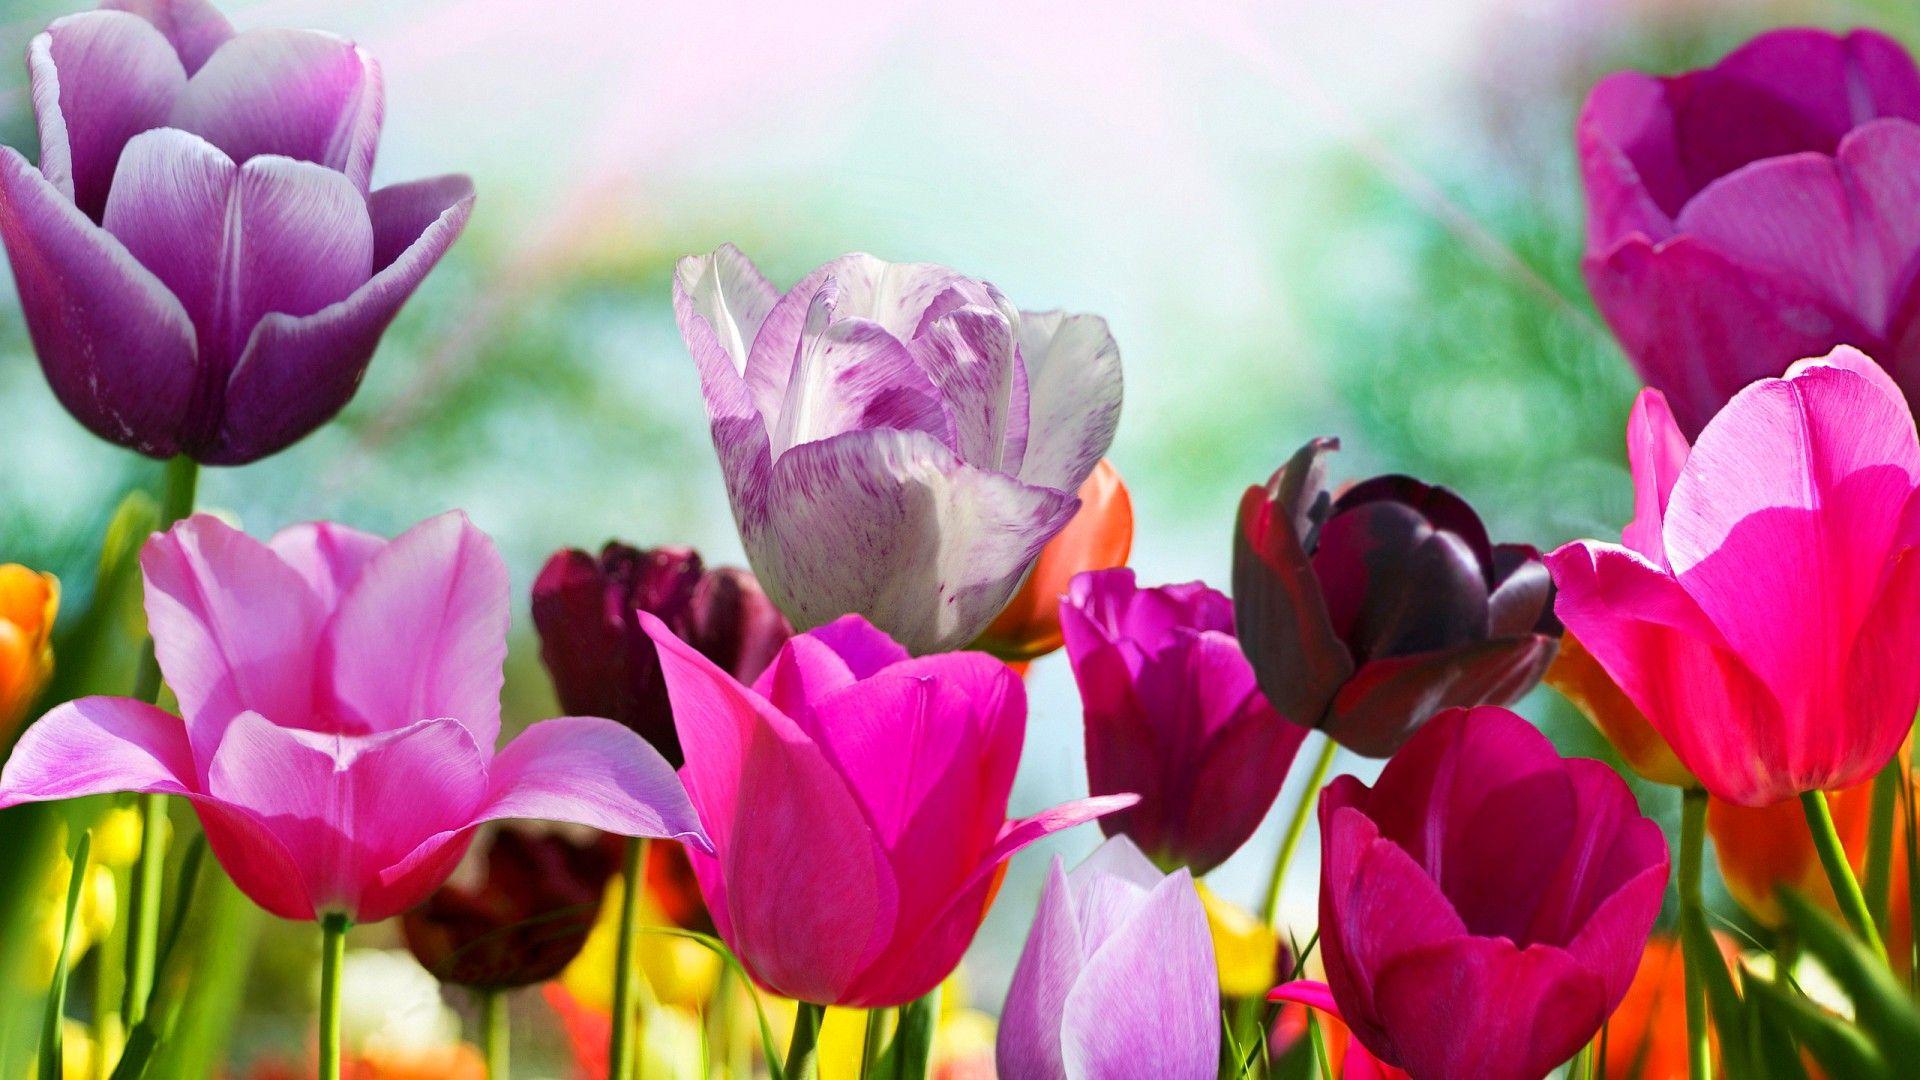 Spring Flowers Desktop Wallpapers - Top Free Spring Flowers Desktop